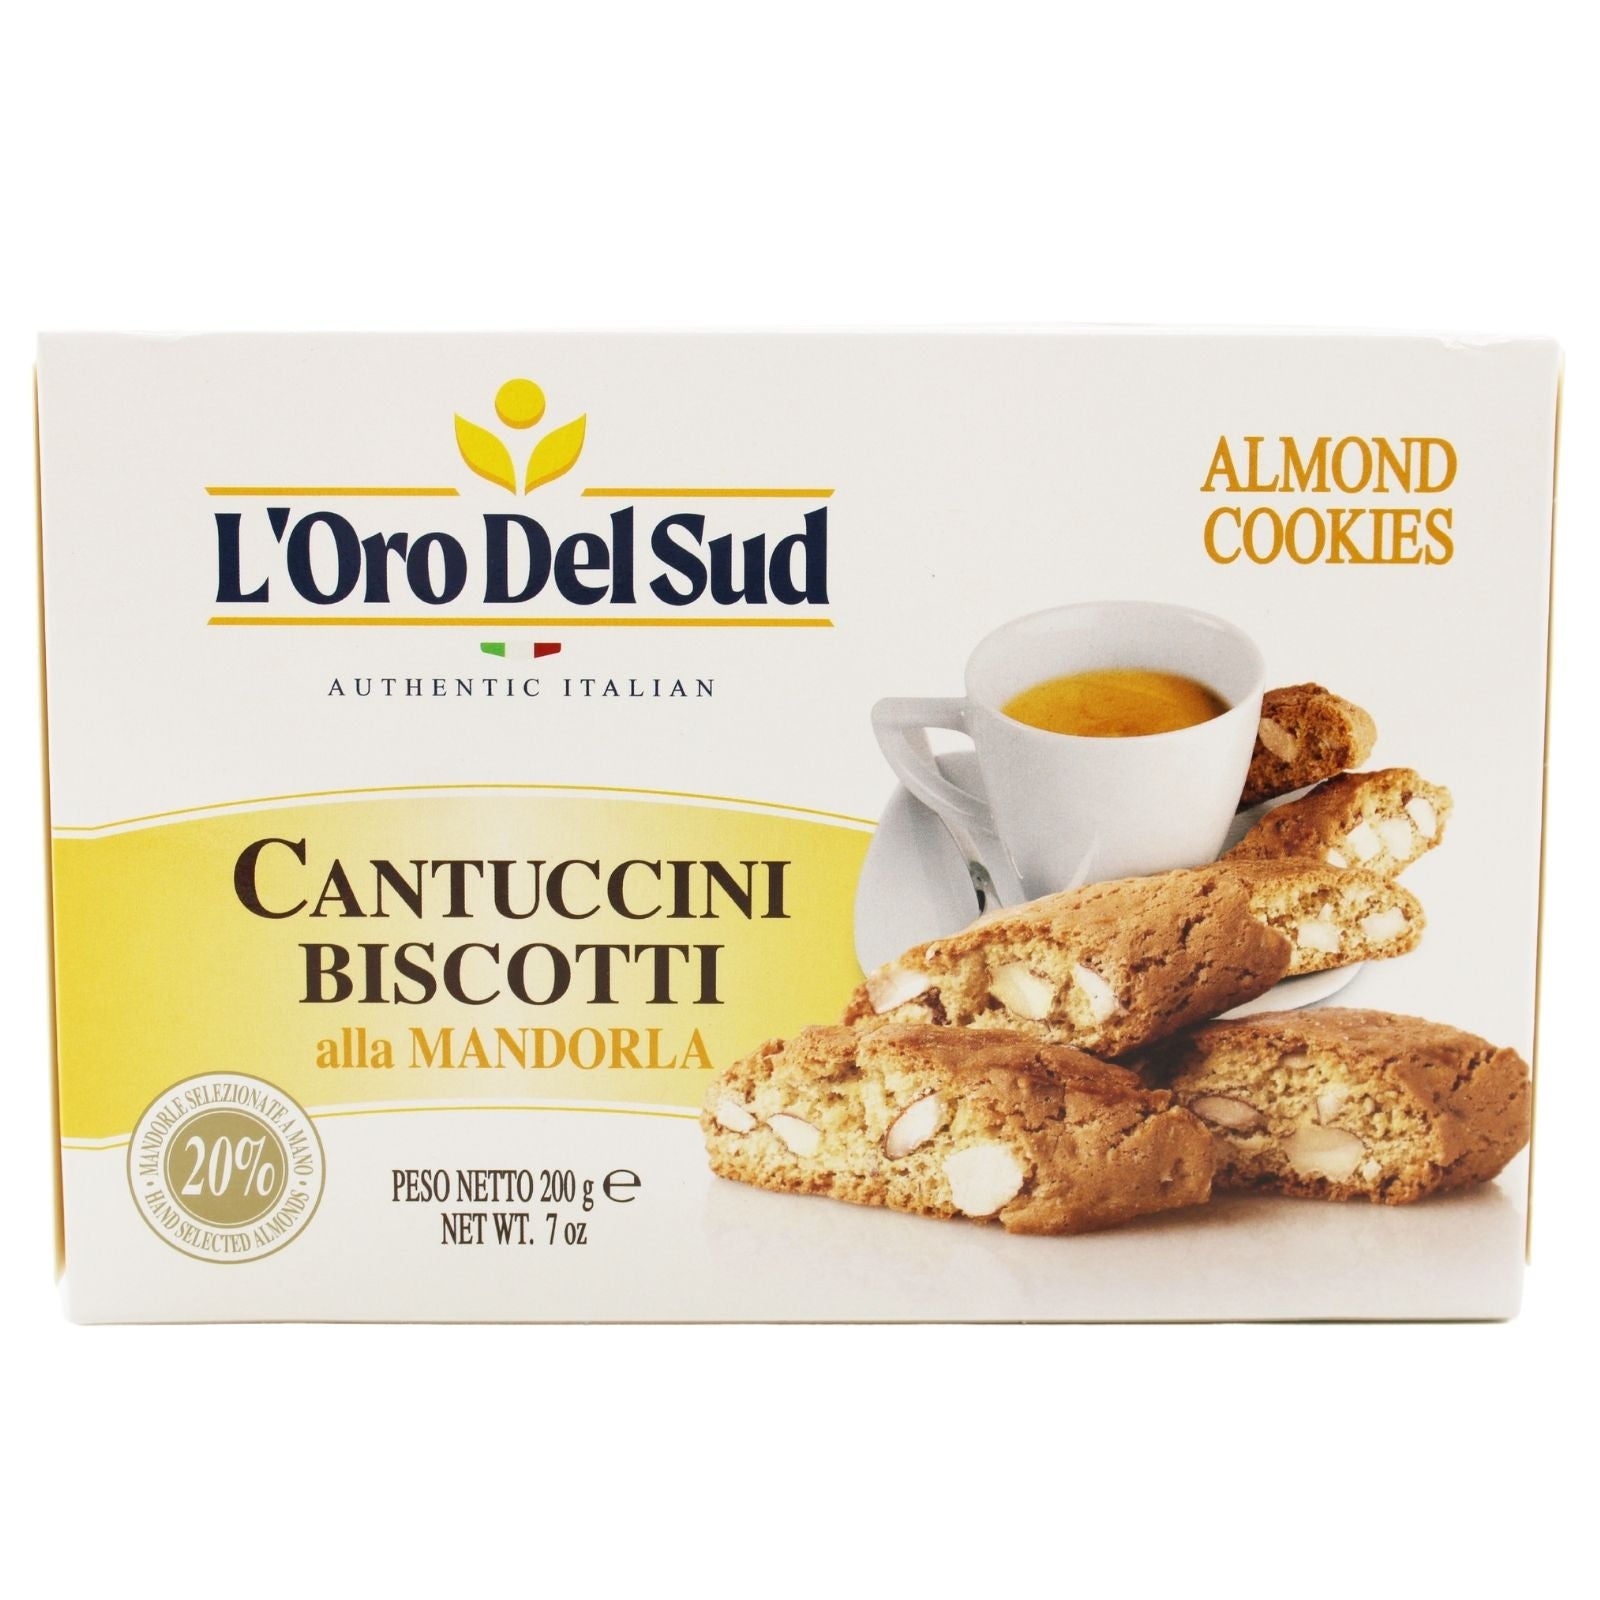 LOro Del Sud Almond Cantuccini